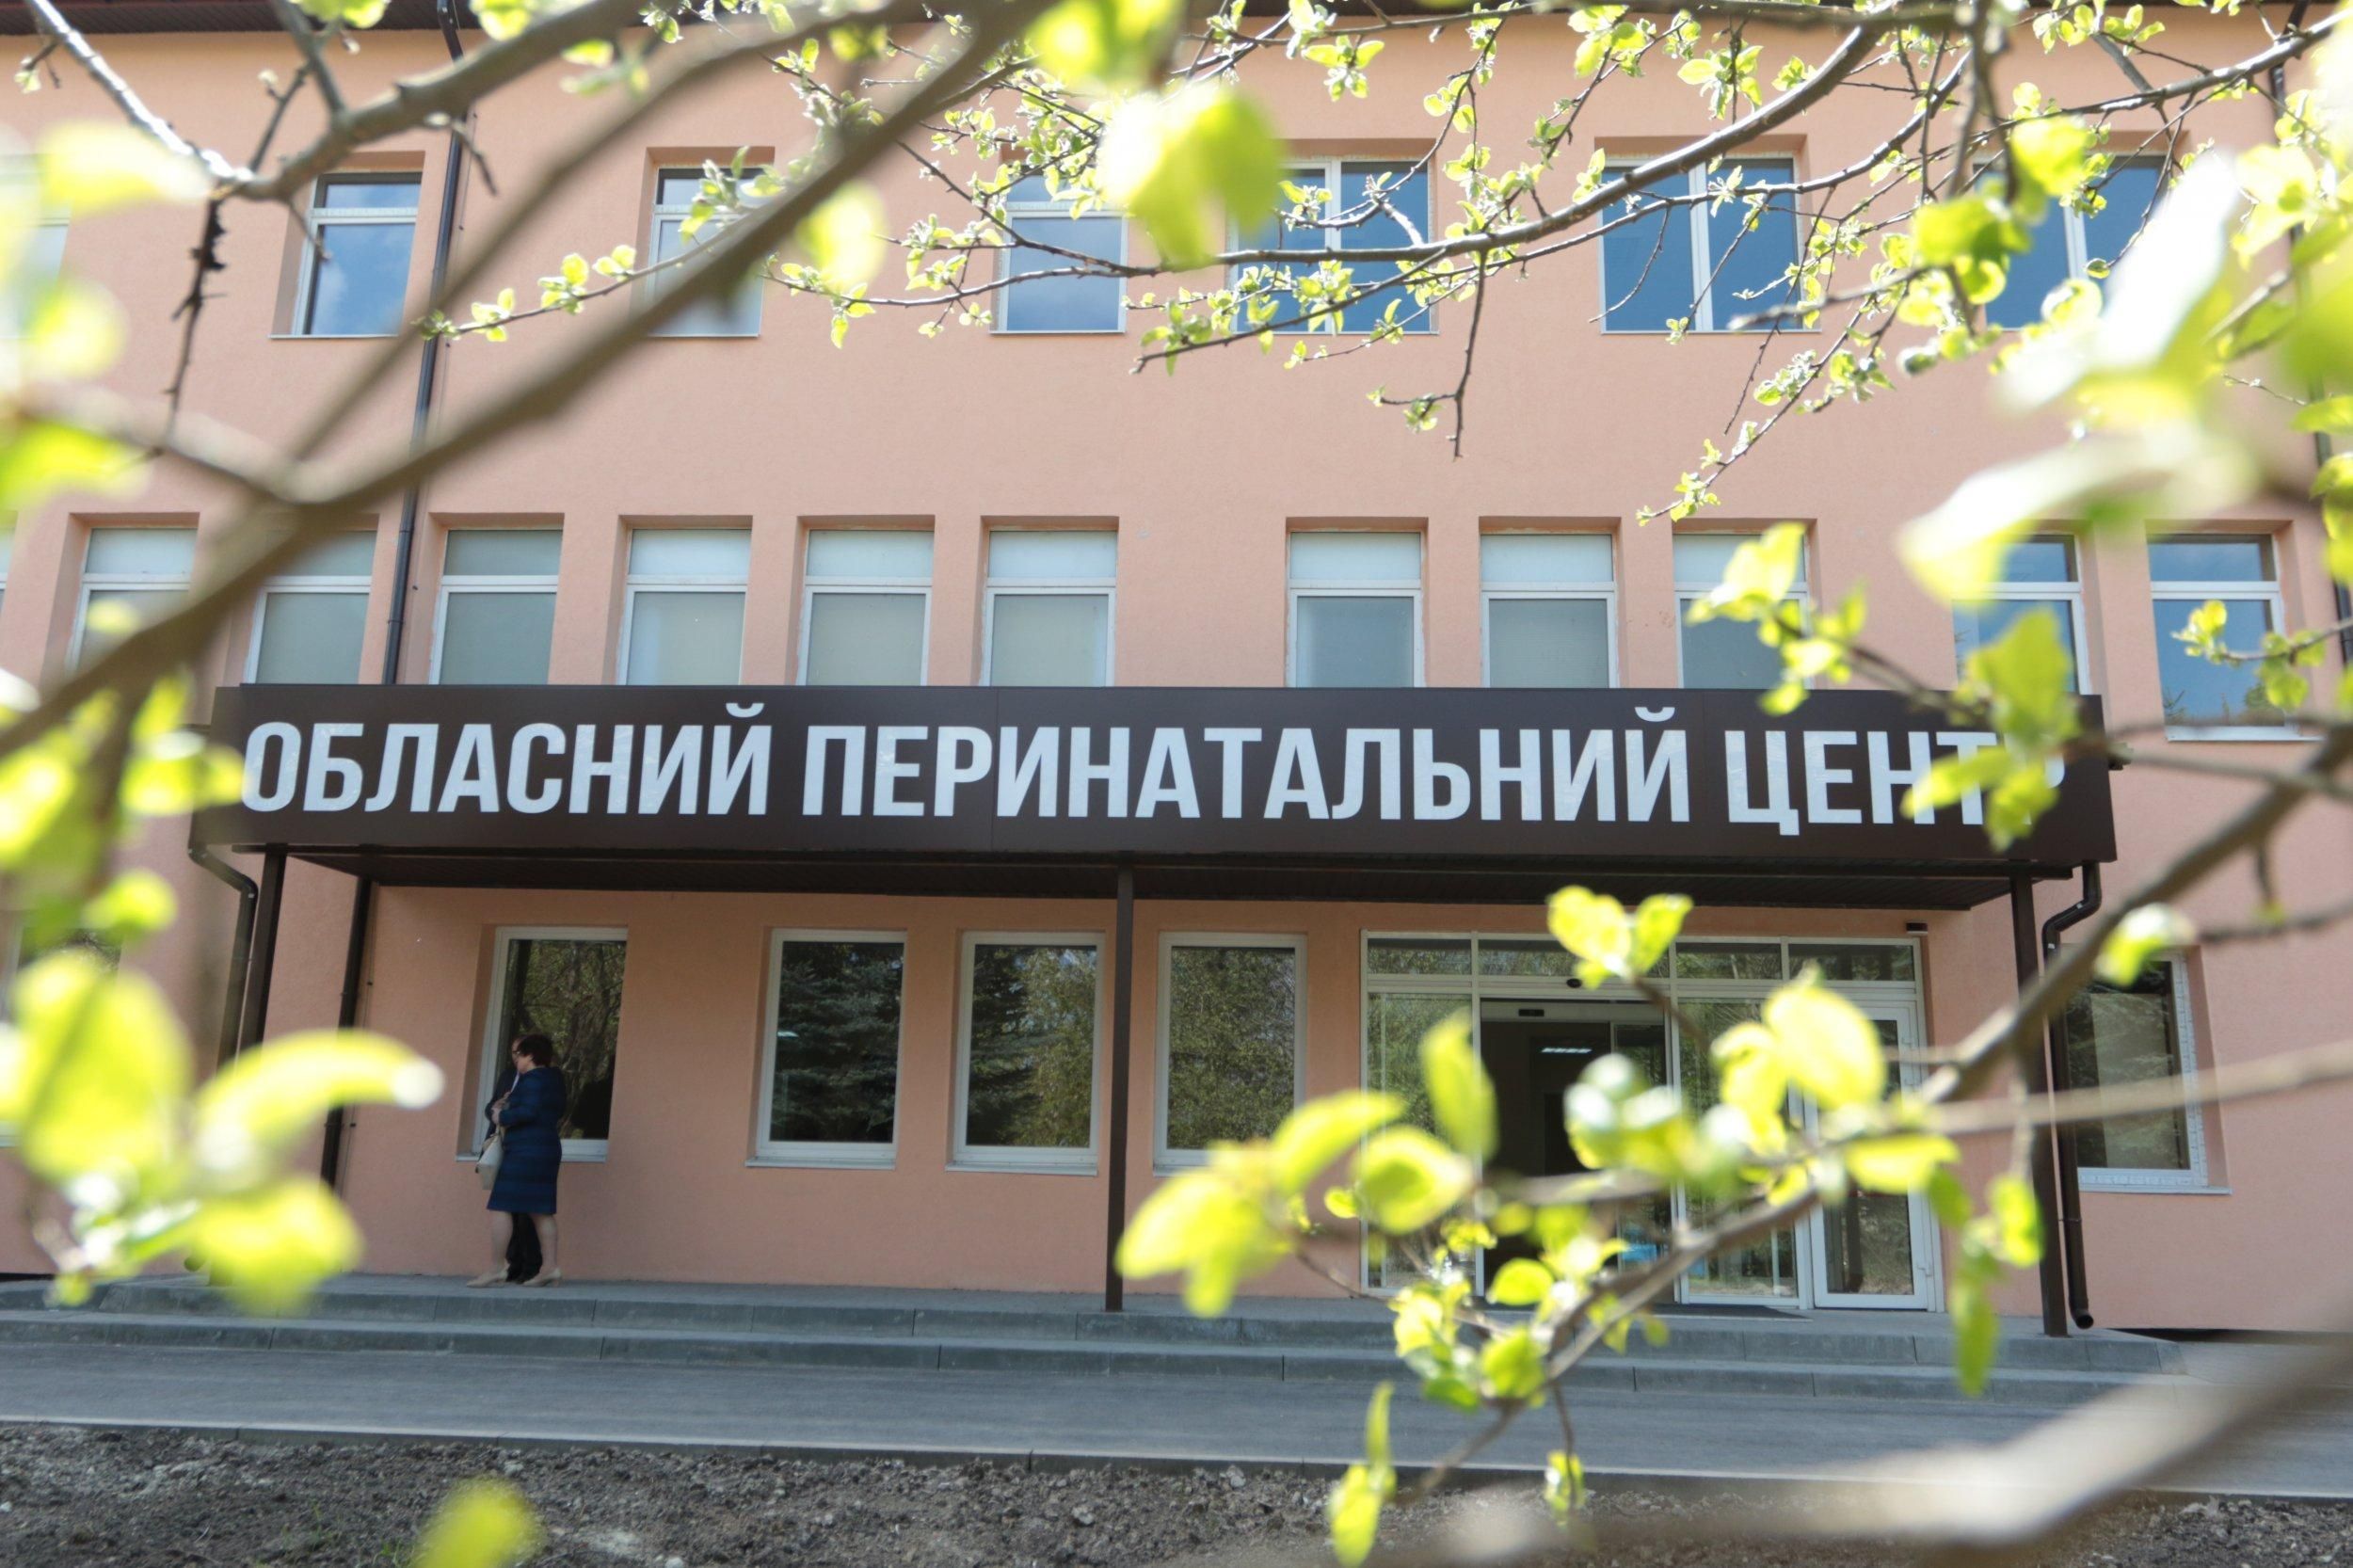 Львовский перинатальный центр закрыли на ремонт: где теперь будут принимать беременных